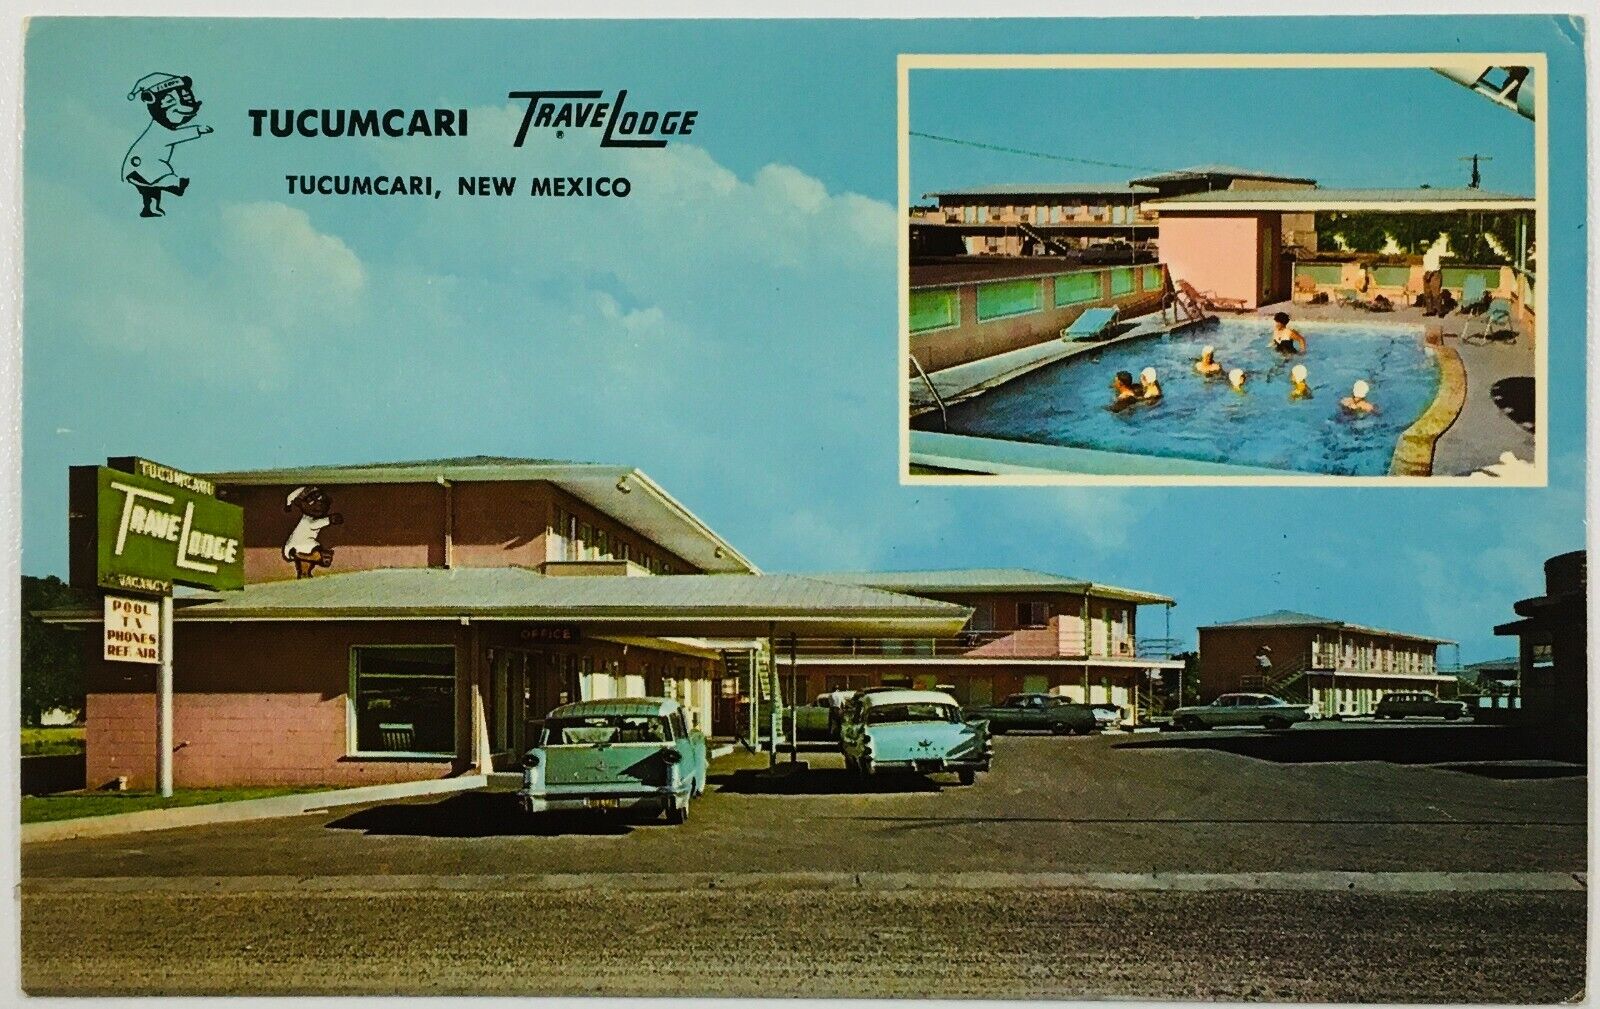 Tucumcari TraveLodge Postcard NM Vintage Cars